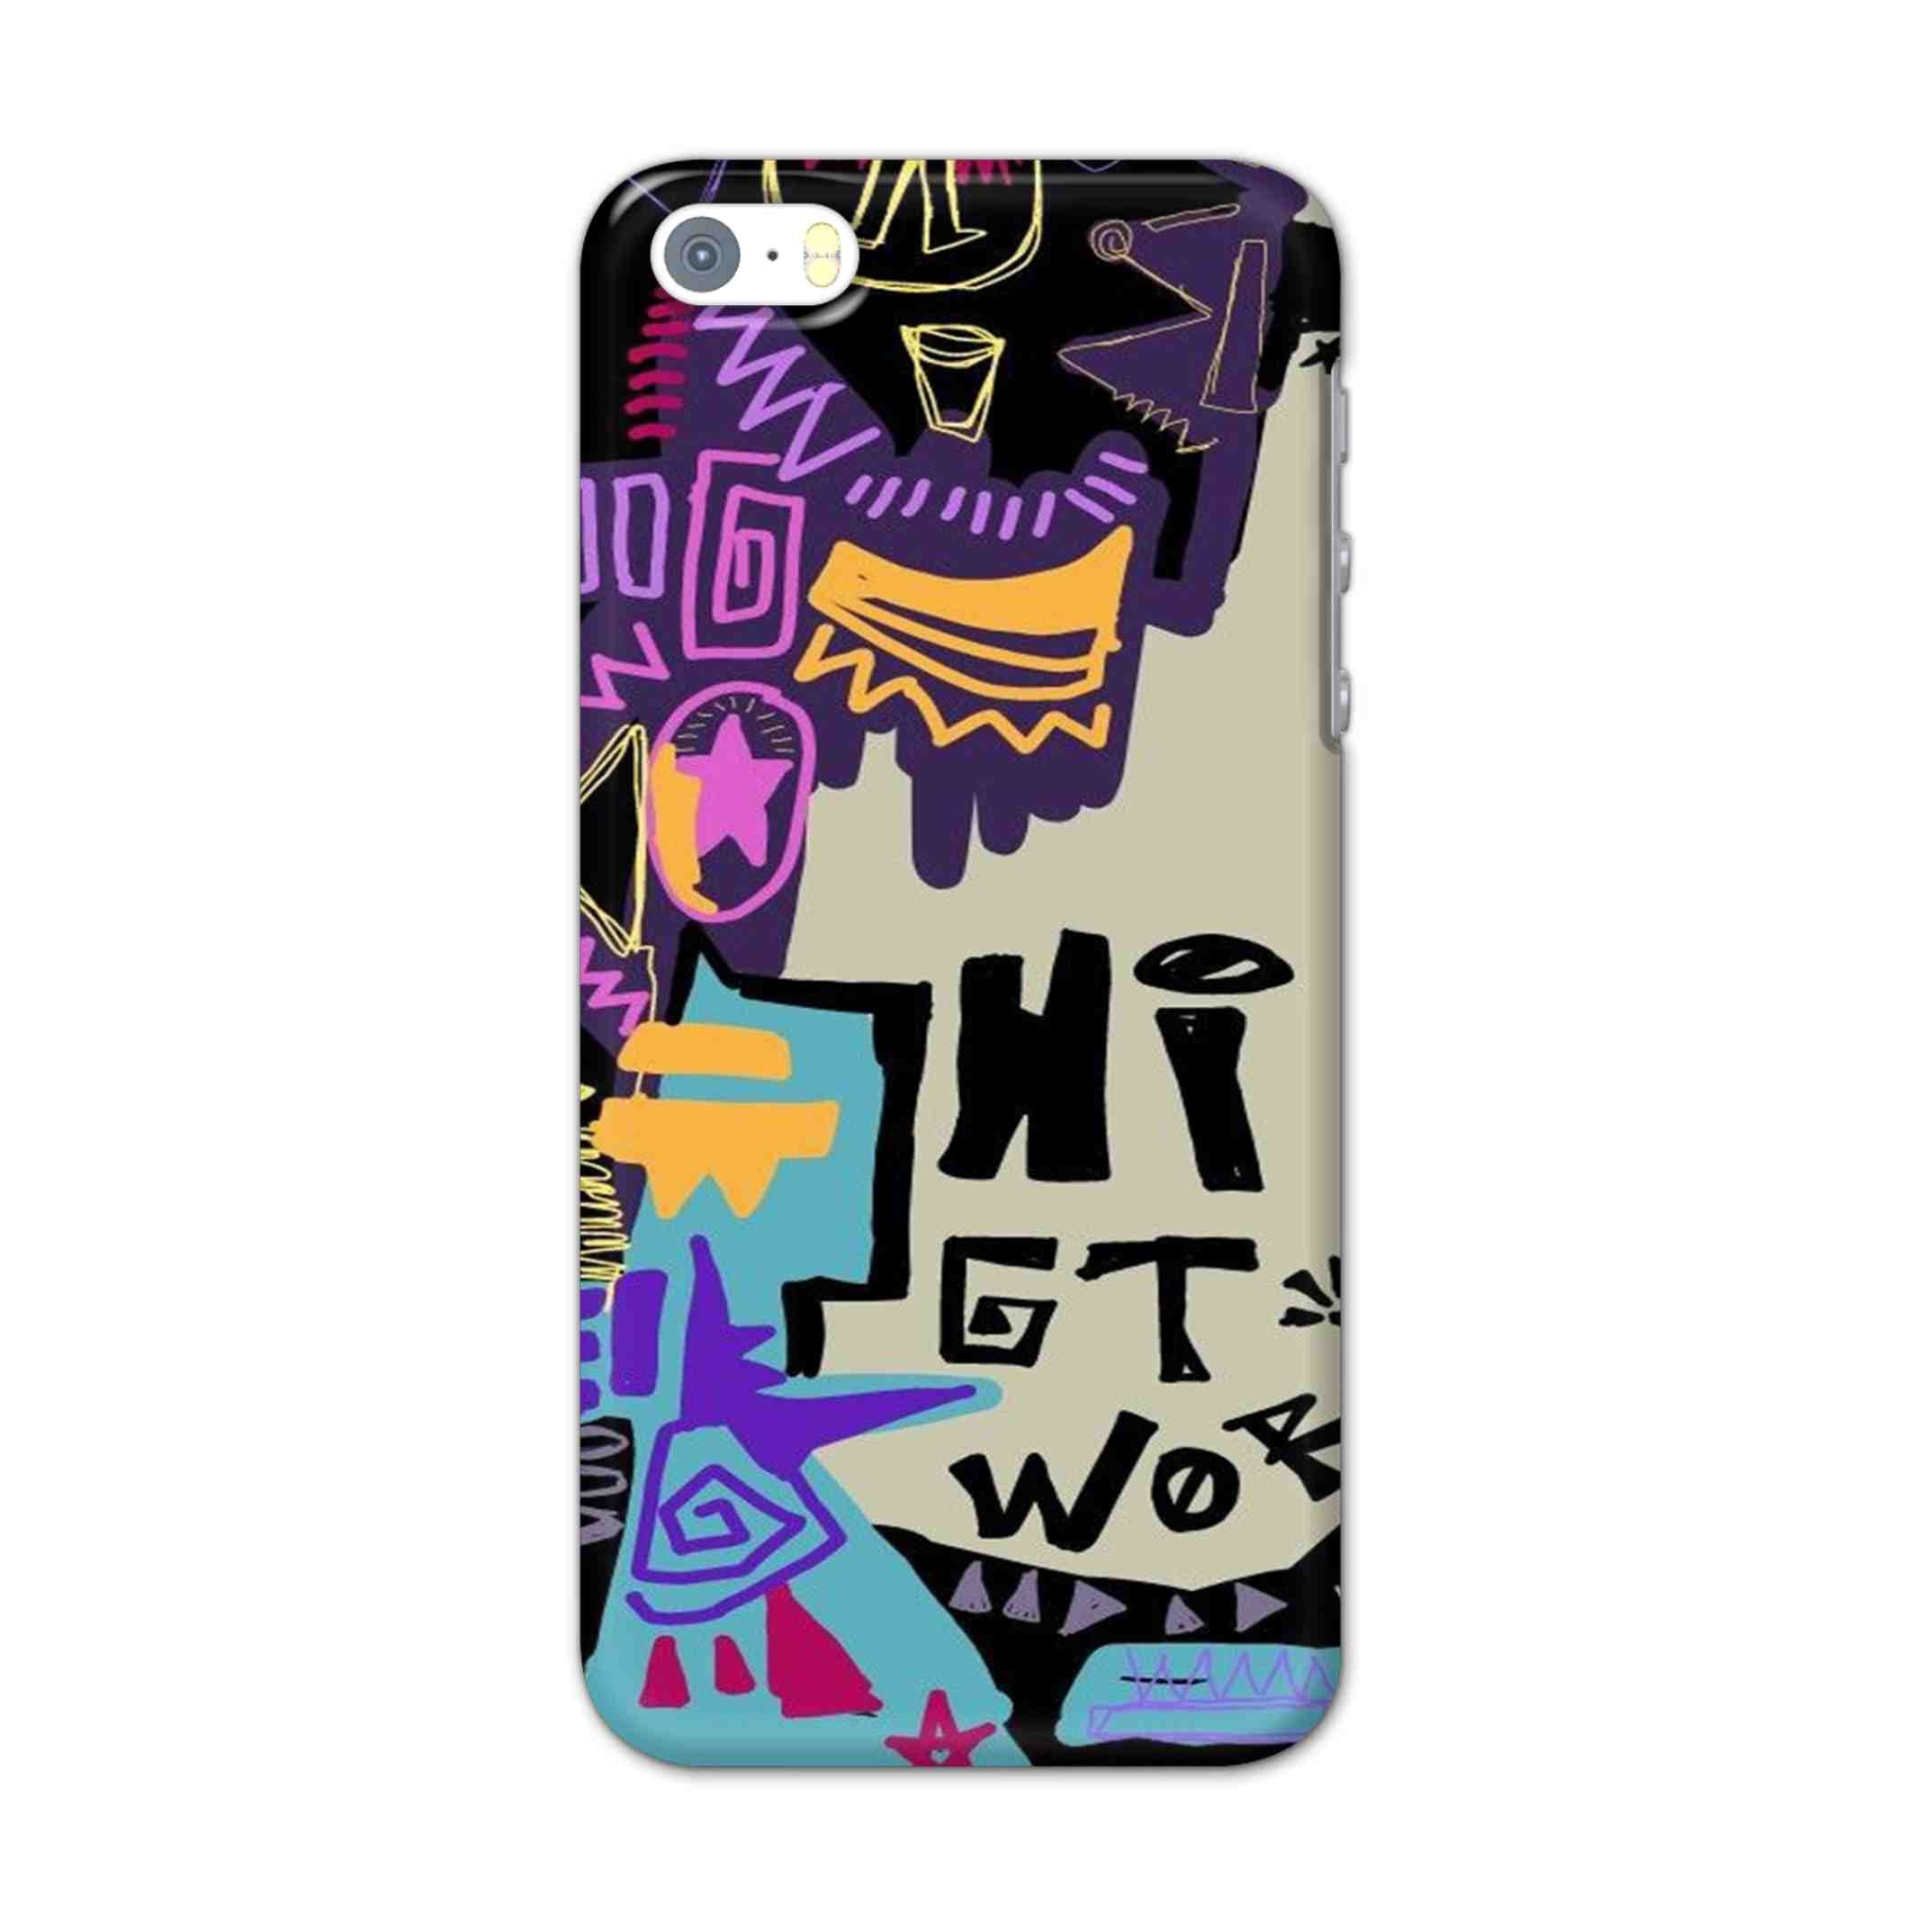 Buy Hi Gt World Hard Back Mobile Phone Case/Cover For Apple Iphone SE Online